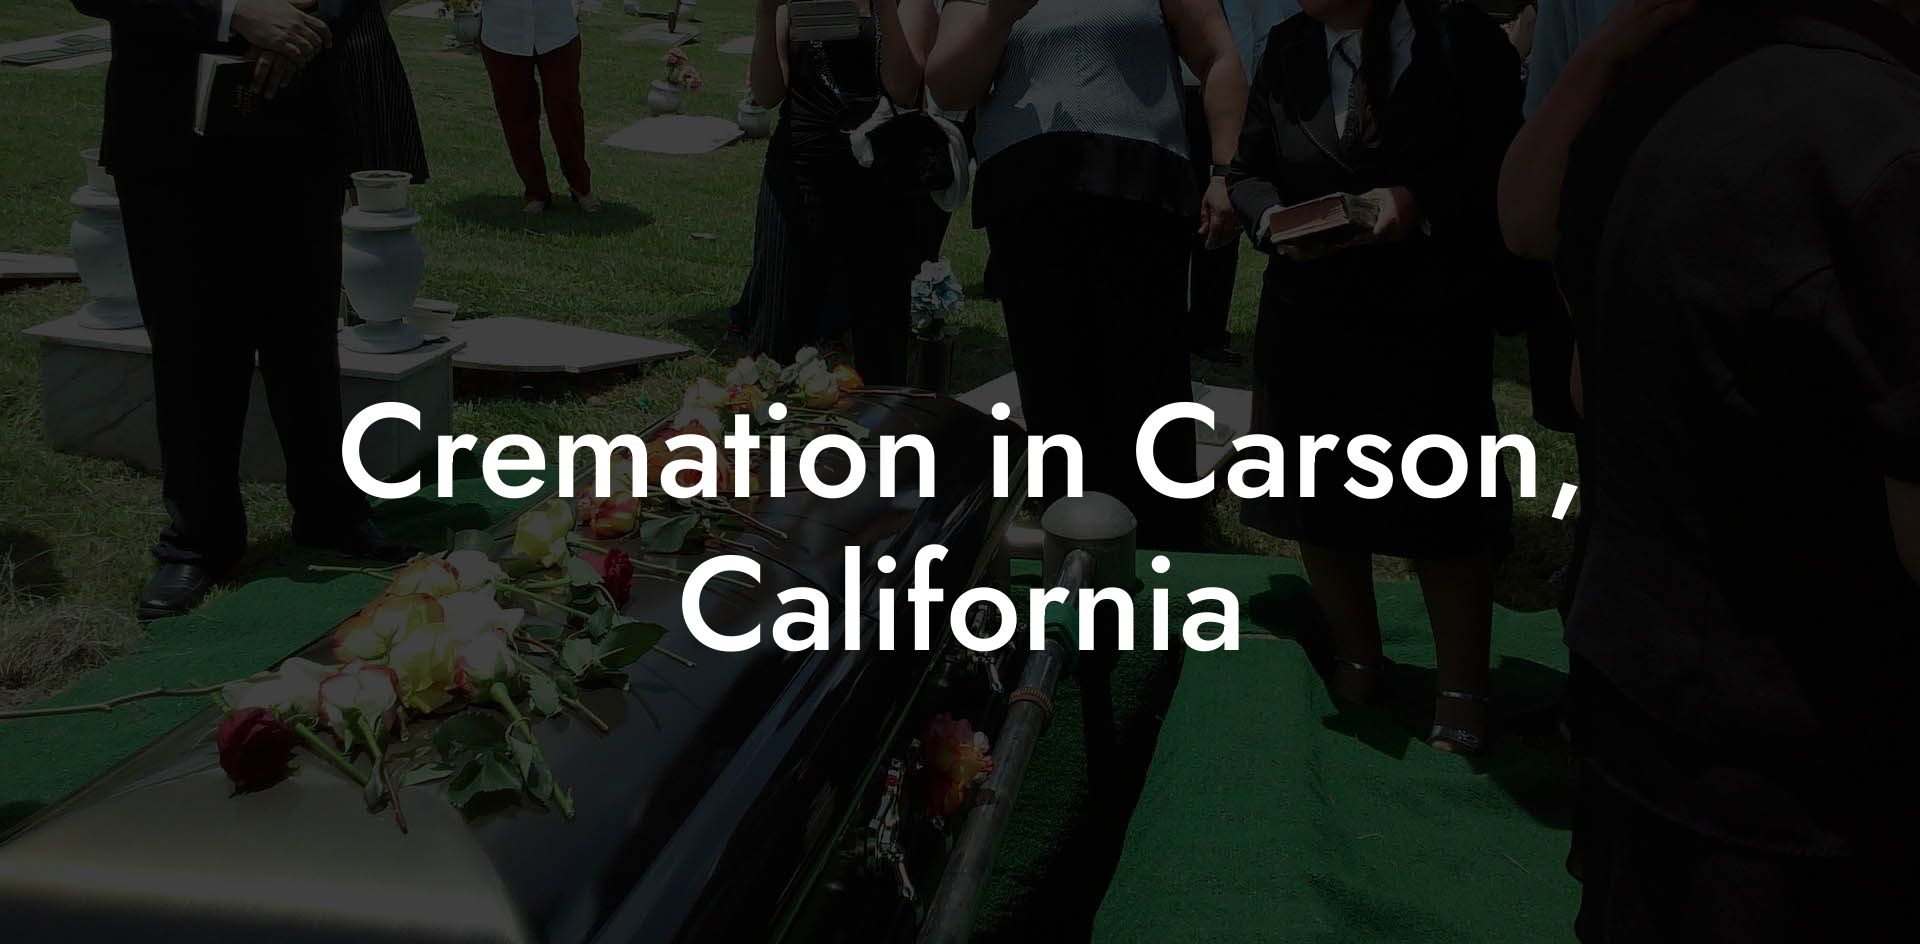 Cremation in Carson, California